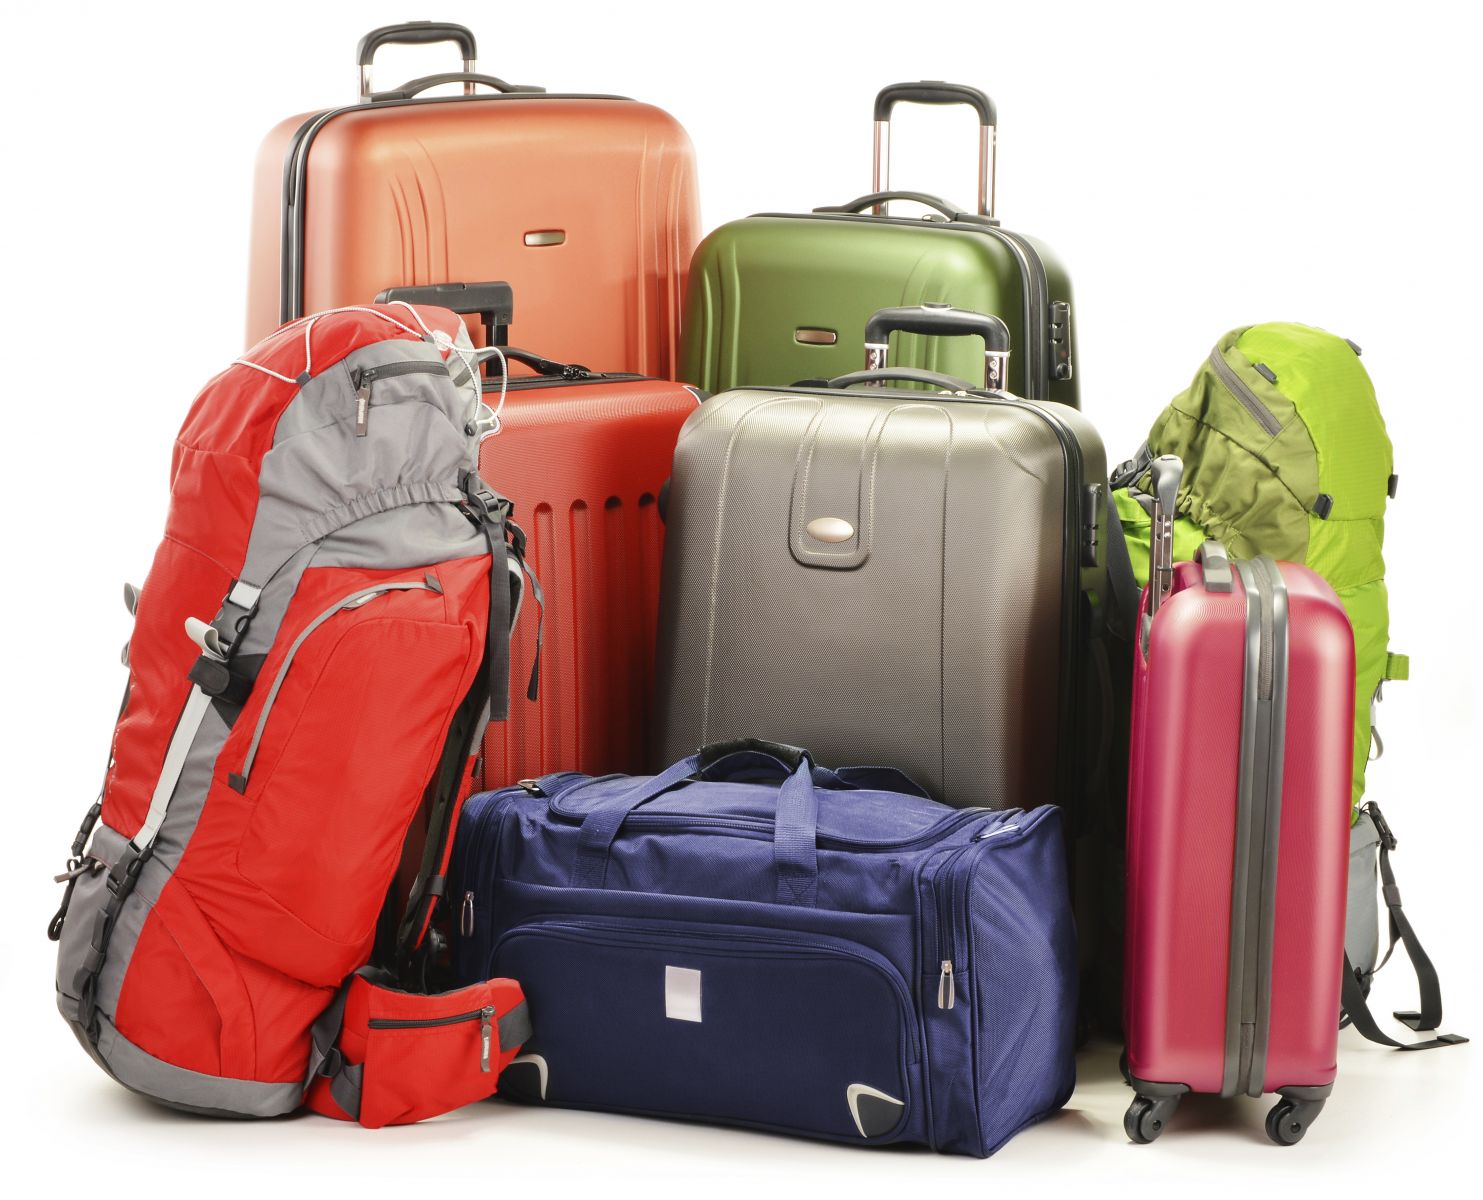 Hạn chế chi phí phát sinh đối với hành lý – Bạn đã biết cách?